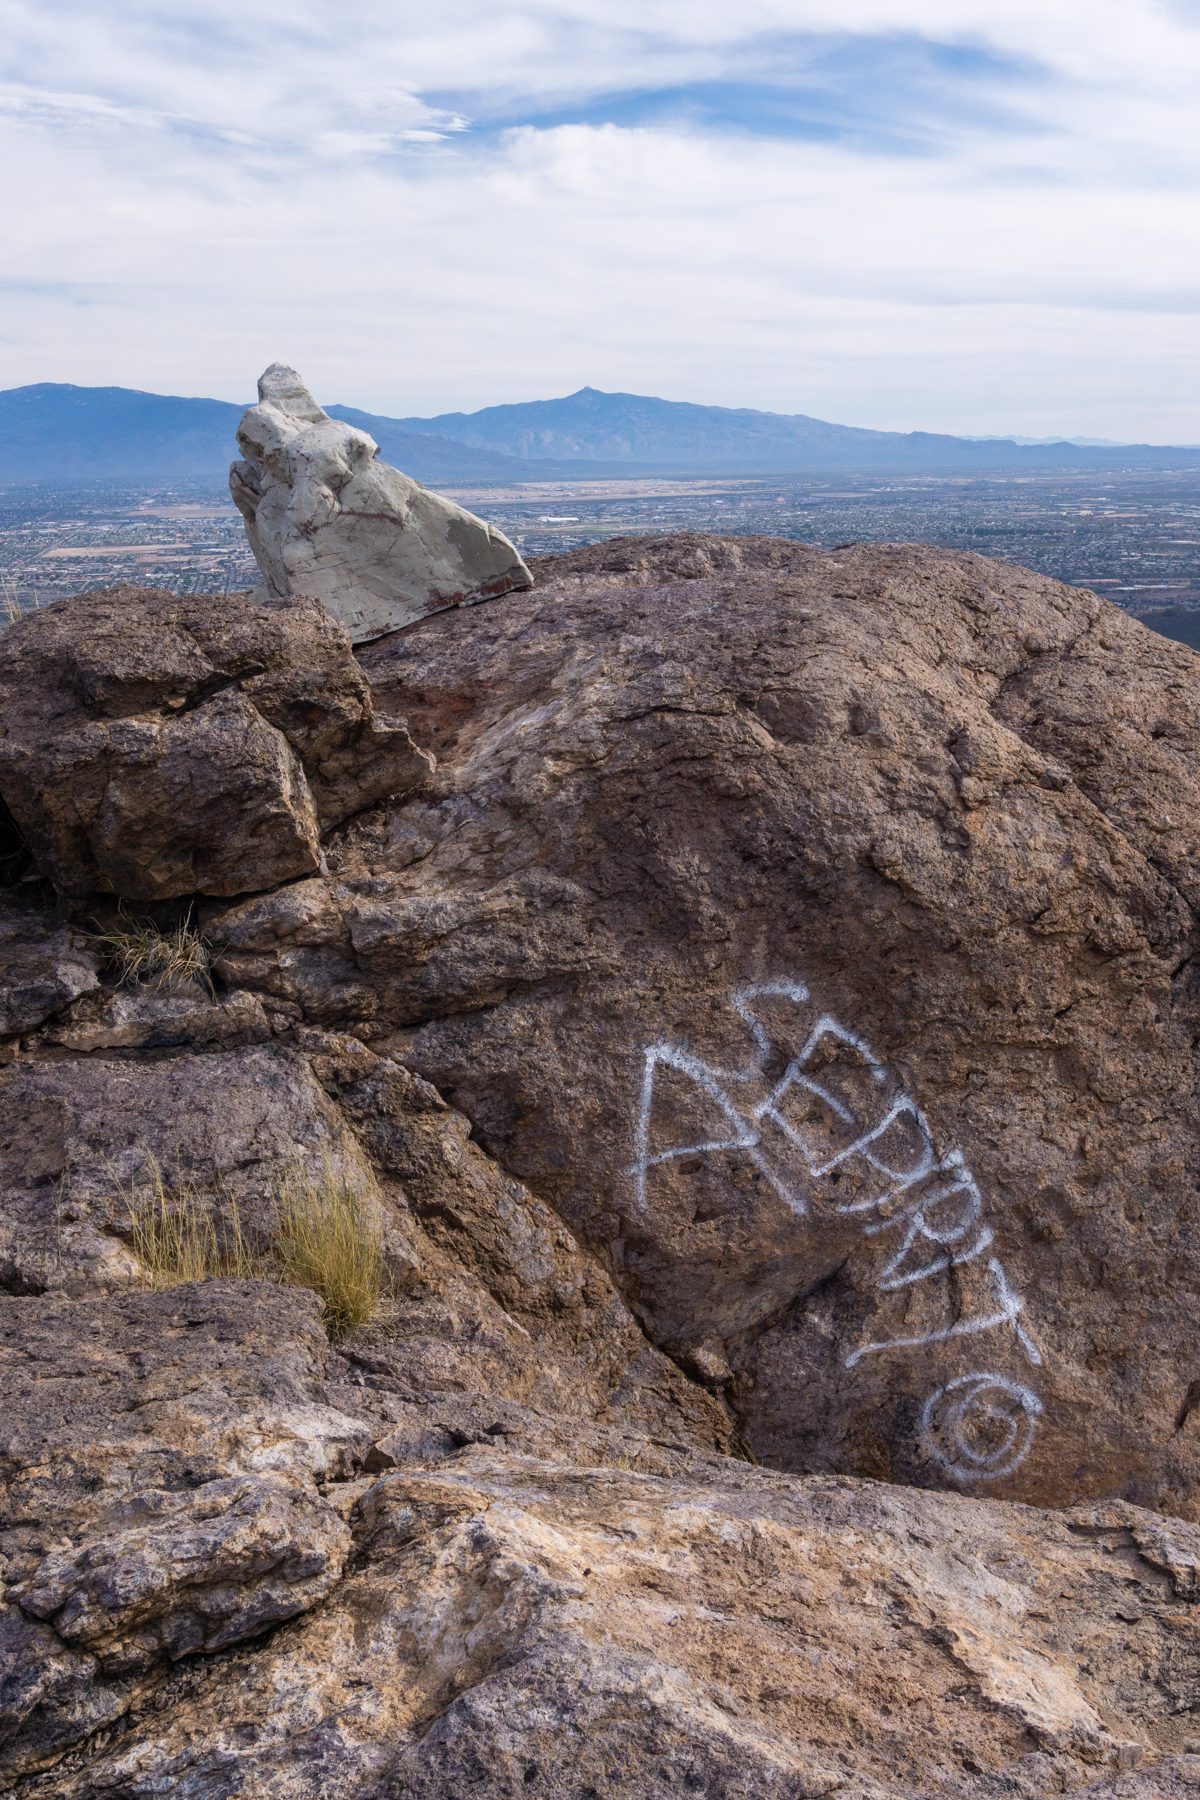 2019 December Graffiti on the Cat Mountain Summit